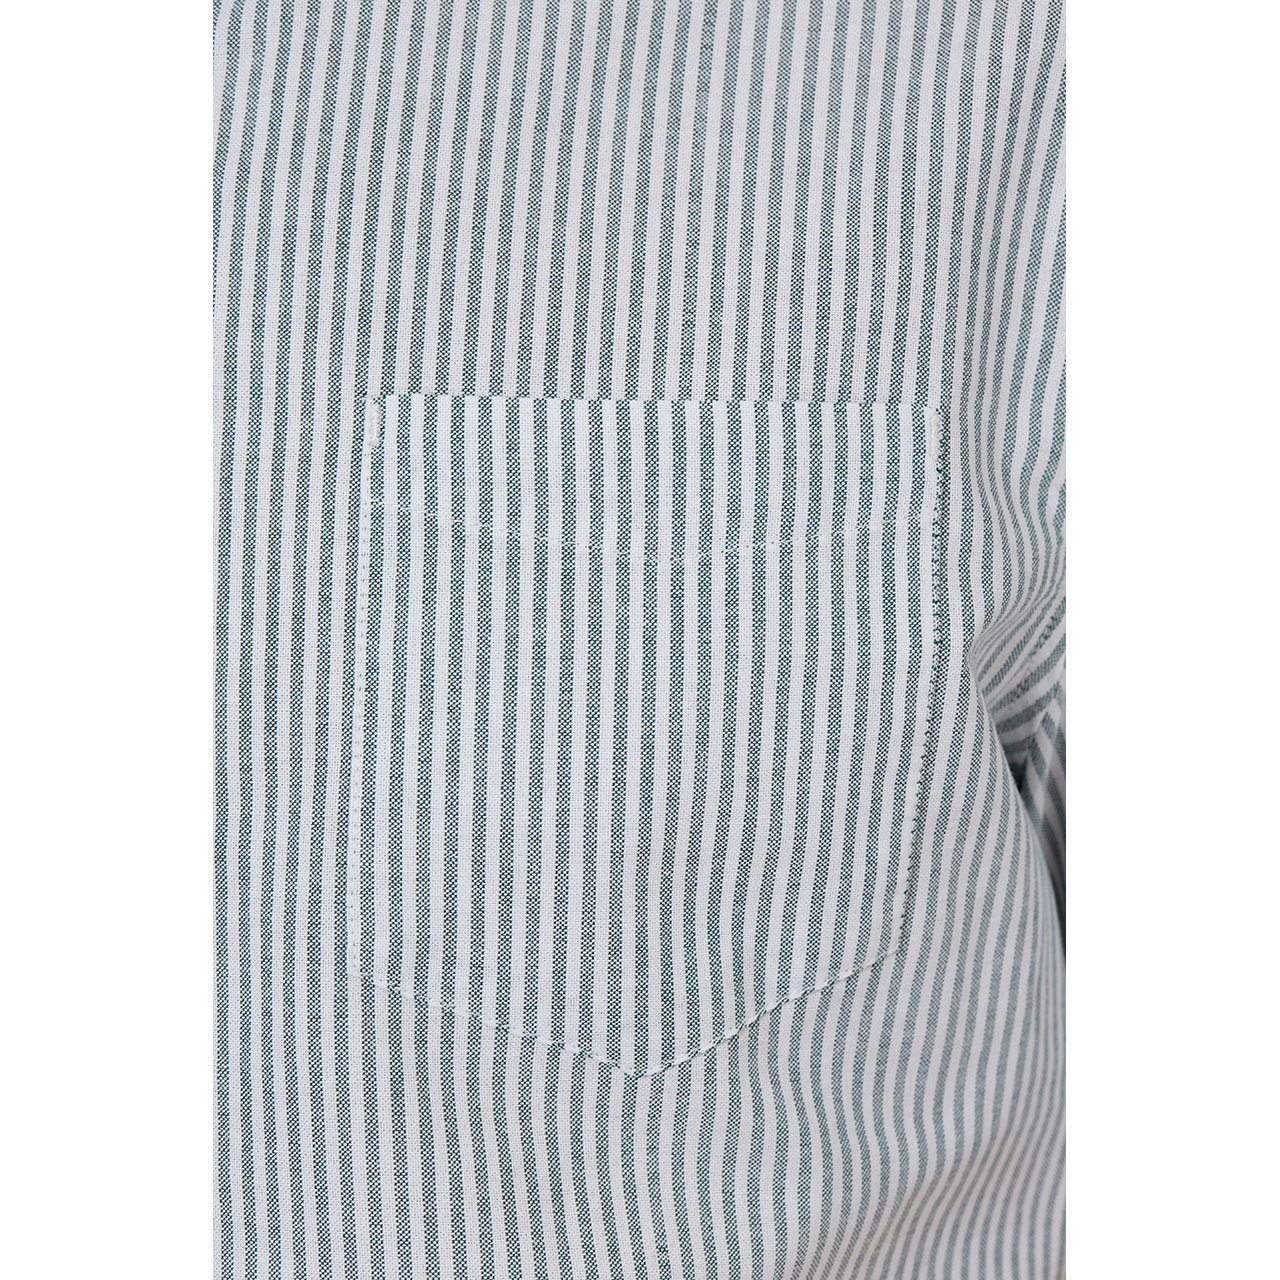 Larry Green Vertical Striped Shirt